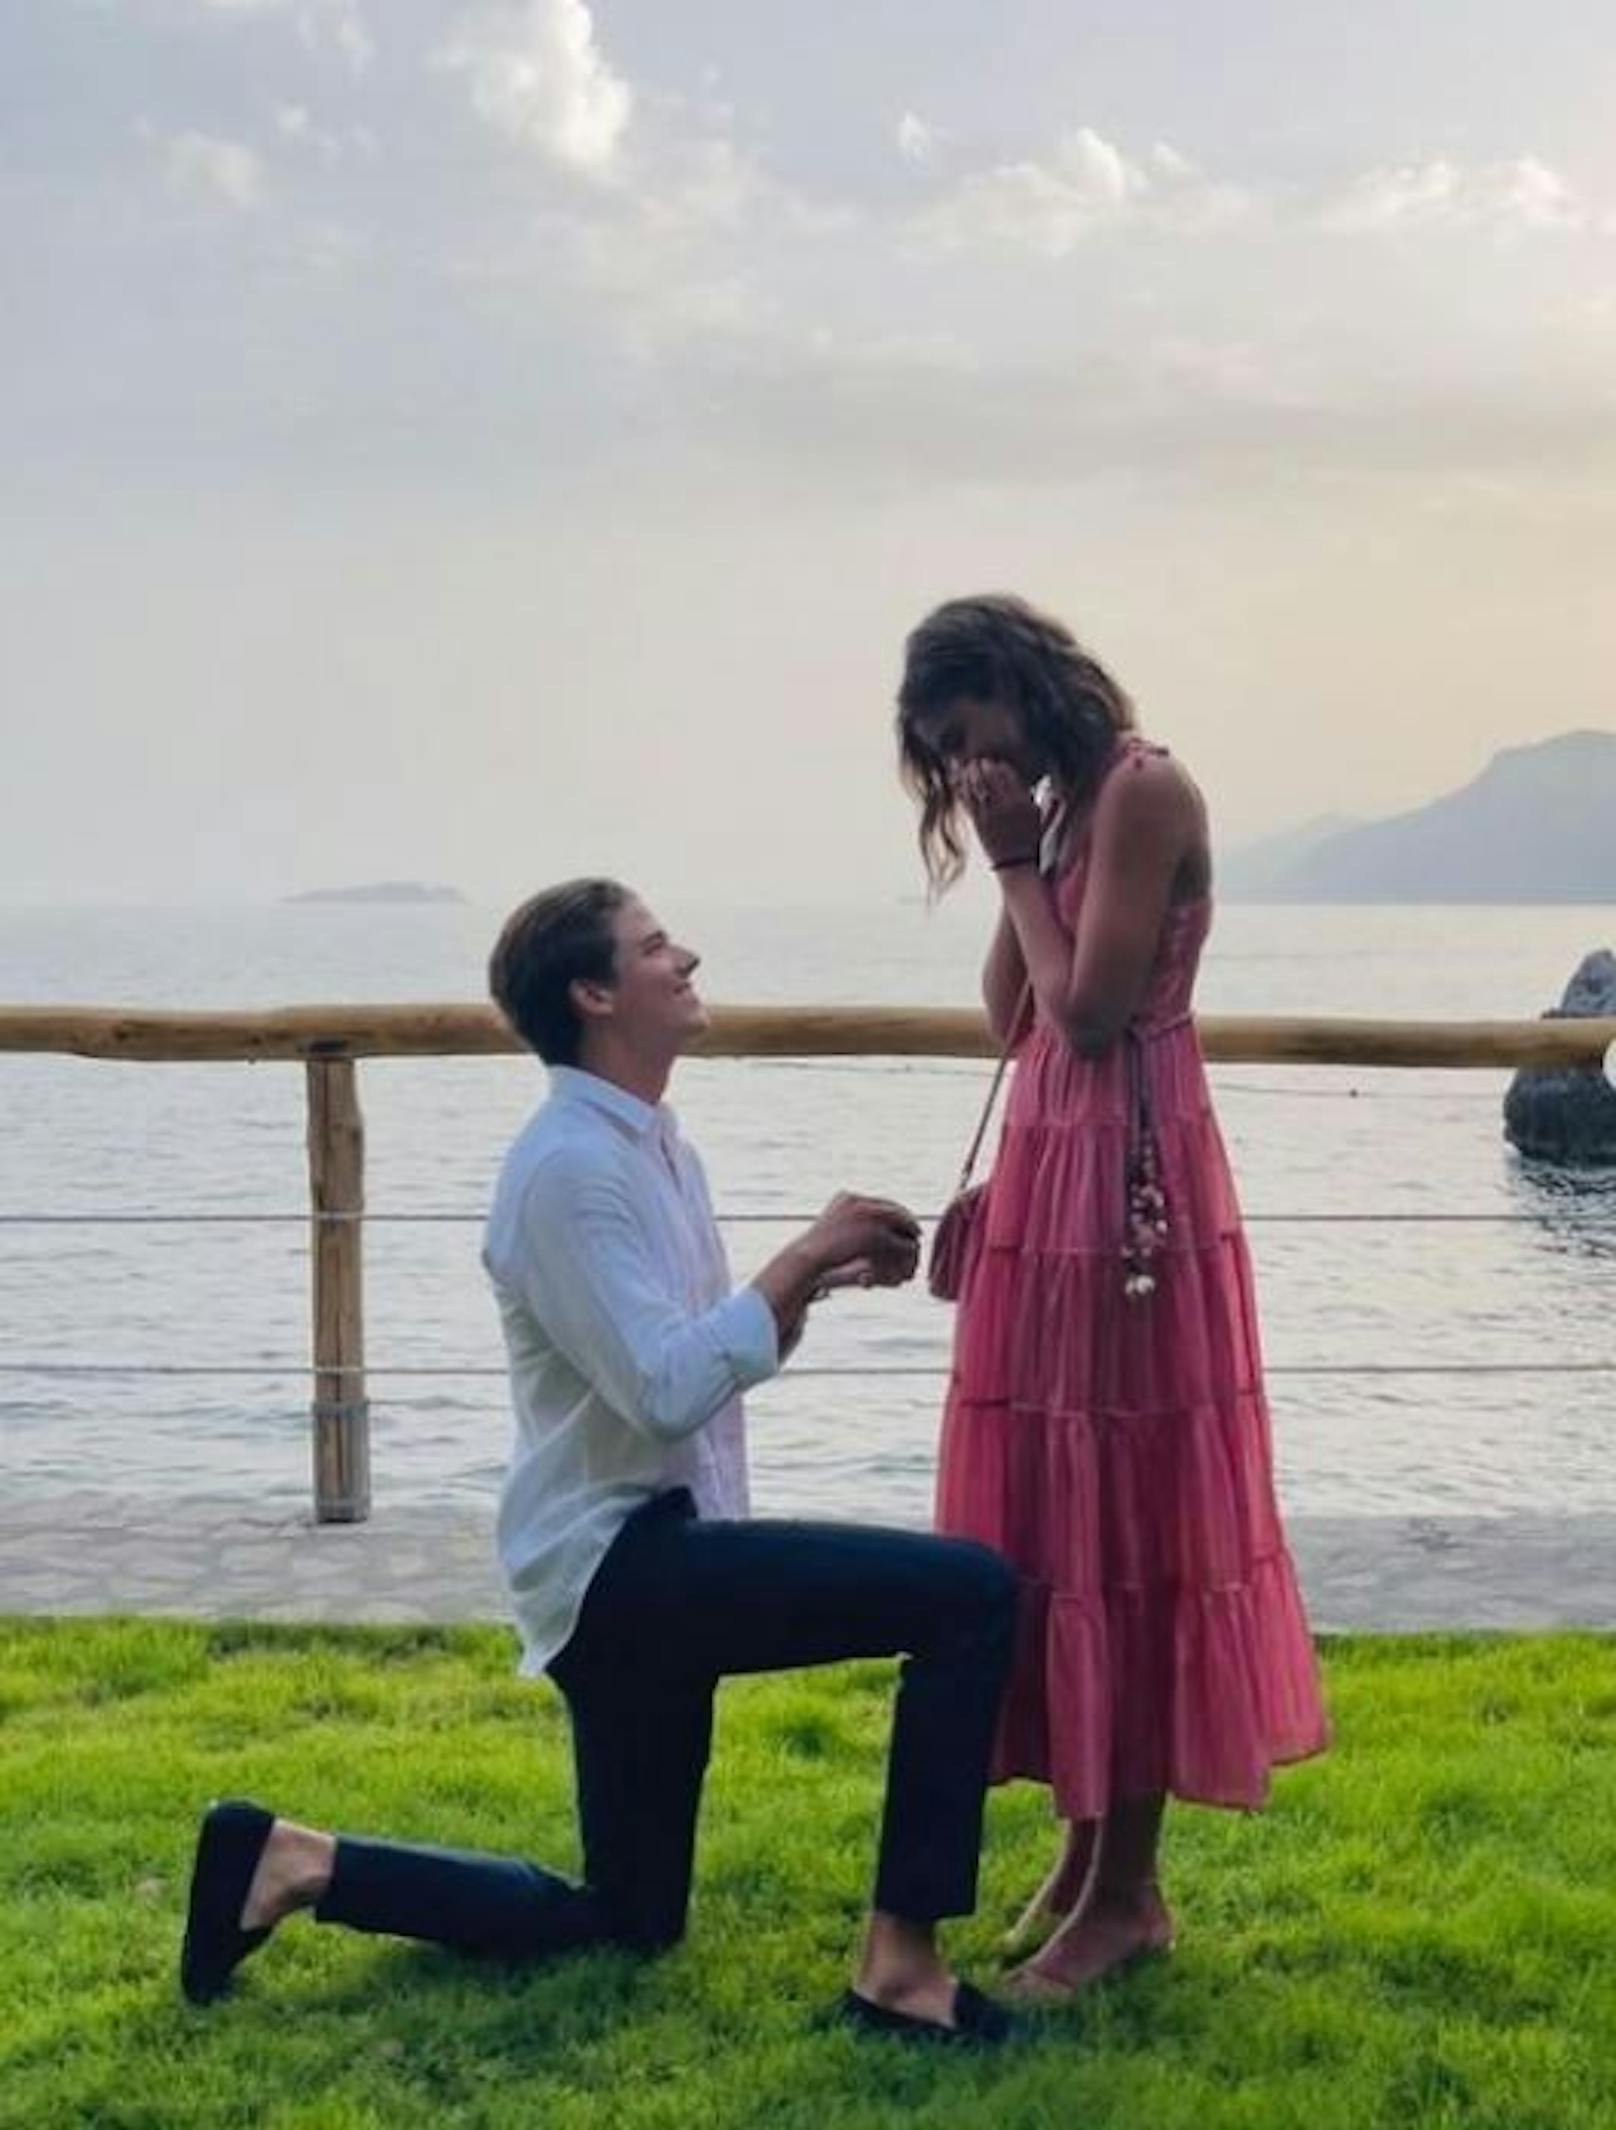 Sängerin Taylor Hill hat von ihrem Freund einen Heiratsantrag bekommen. Sie hat "Ja" gesagt!